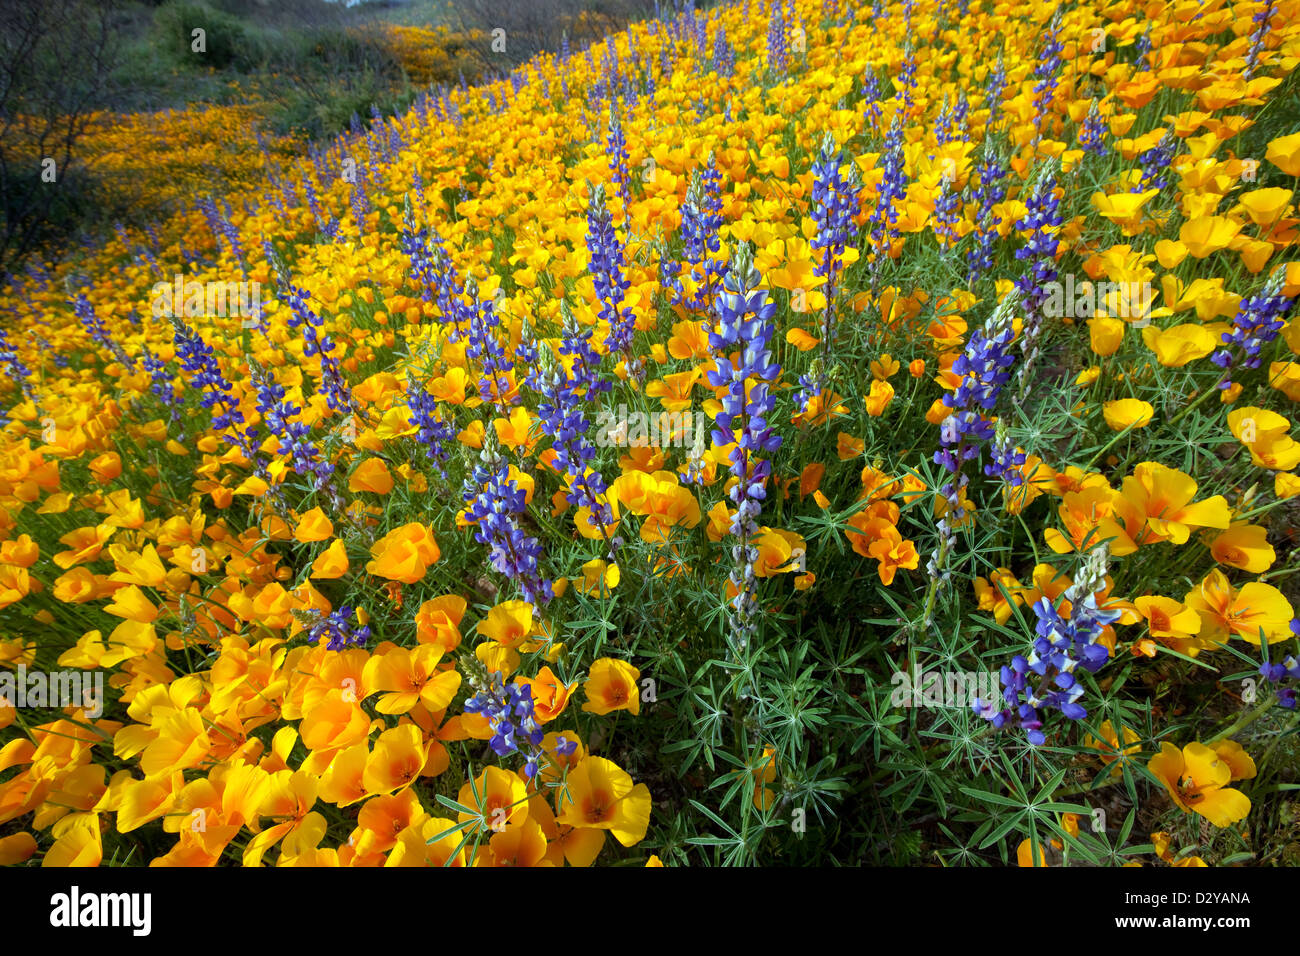 Spring Wildflowers, California Poppies, and Desert Lupine bloom in the Sonoran Desert, Tucson, Arizona Stock Photo